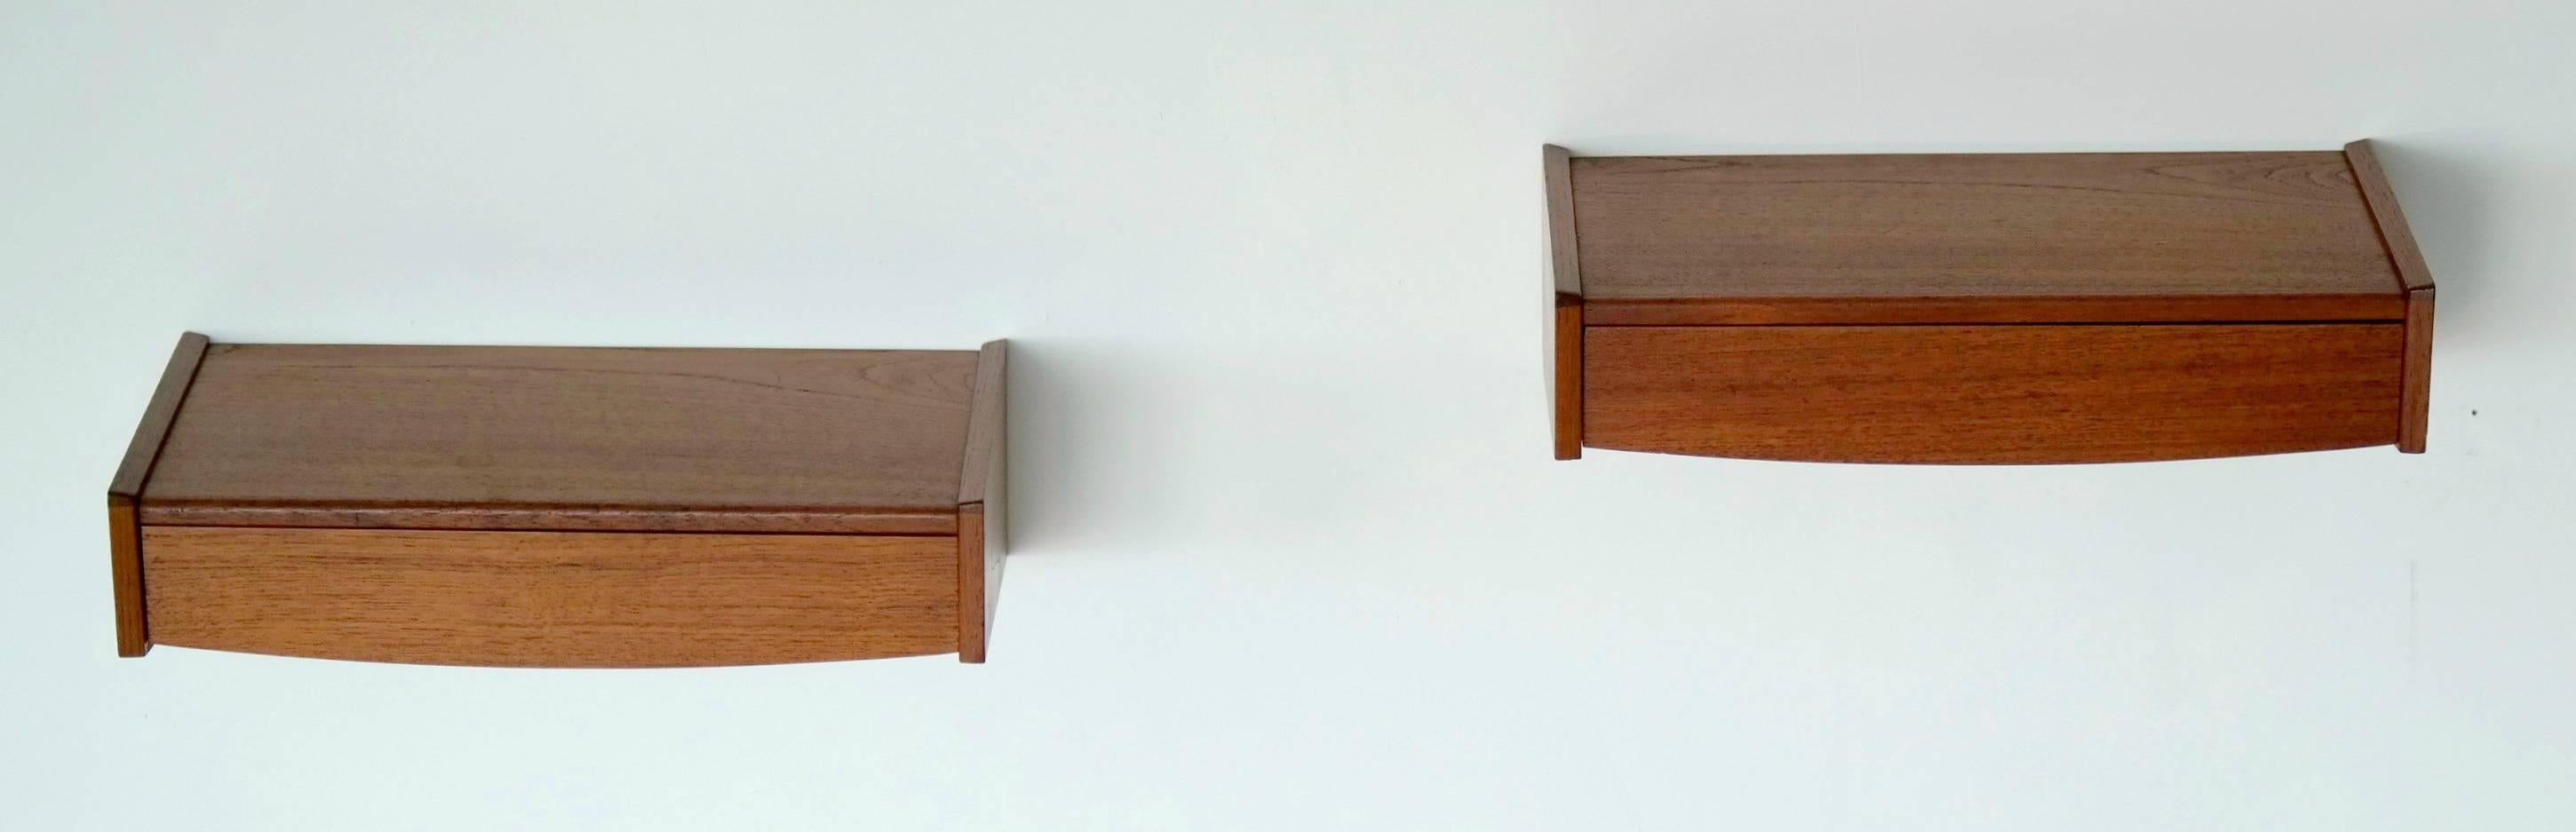 Danish Pair of Arne Hovmand-Olsen Style Floating Nightstands or Shelves in Teak